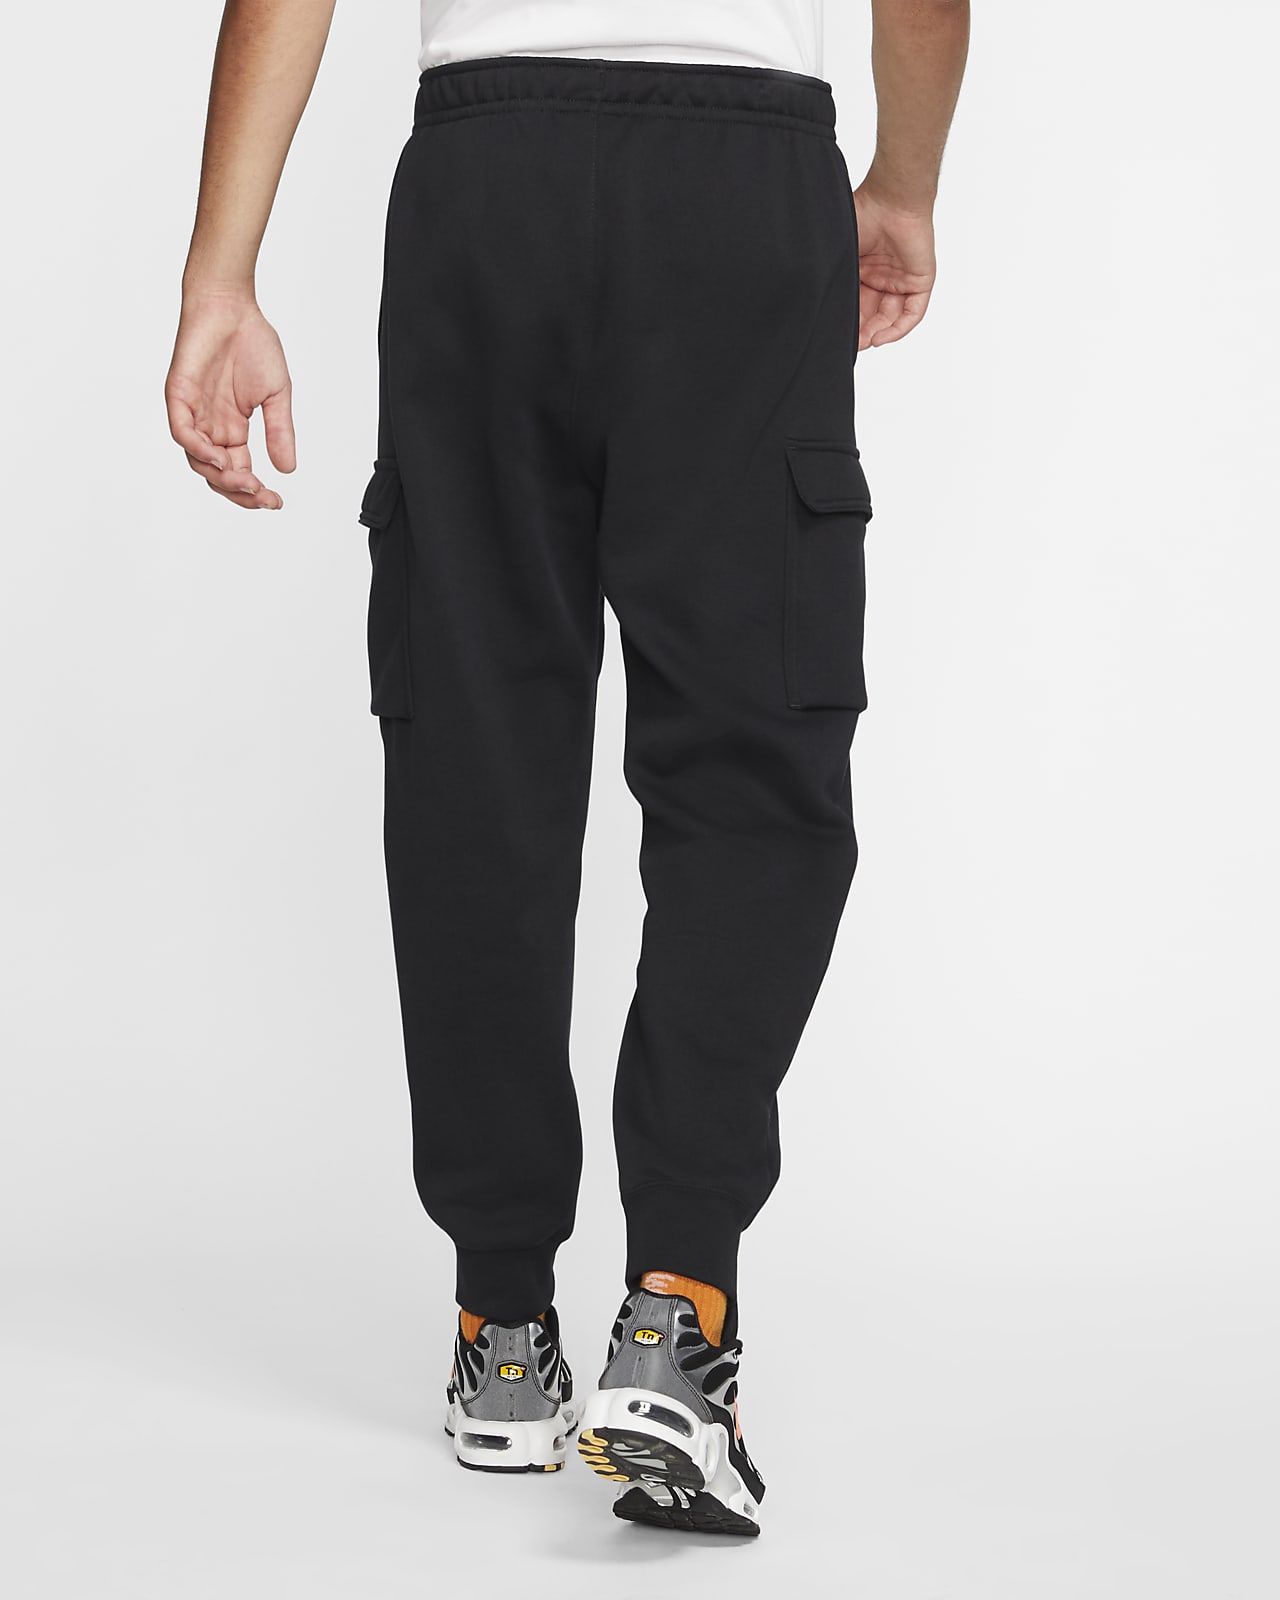 men's nike sportswear club fleece cargo pants